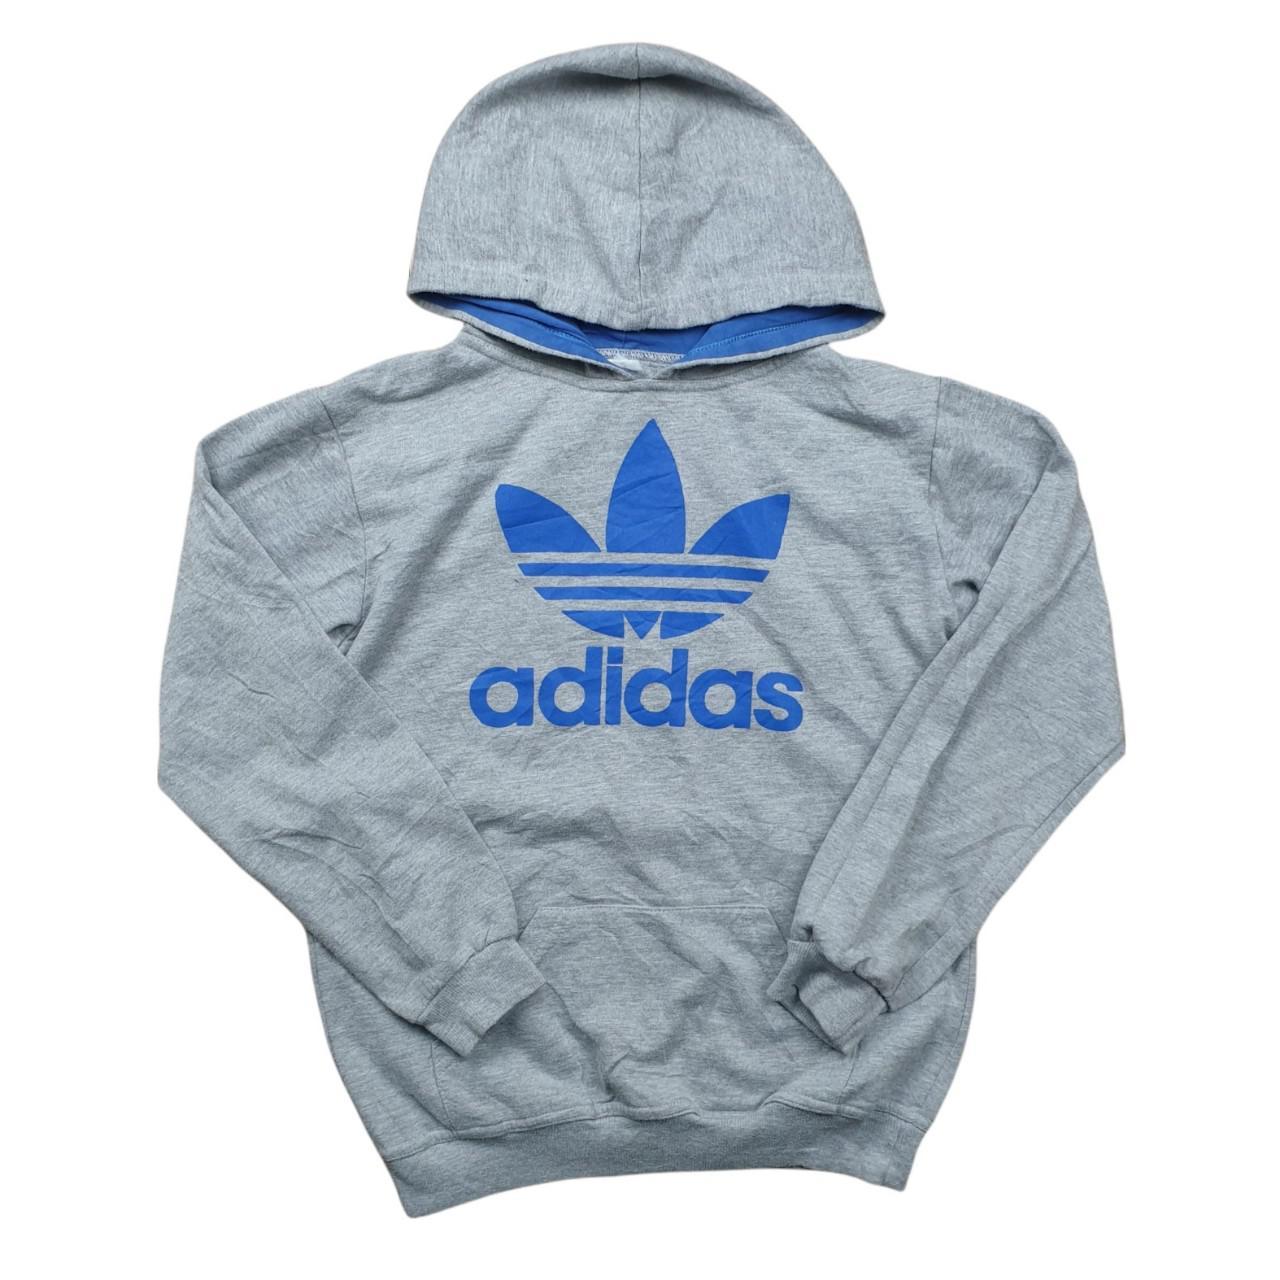 Y2K Adidas Originals Big Logo Sweatshirt in... - Depop